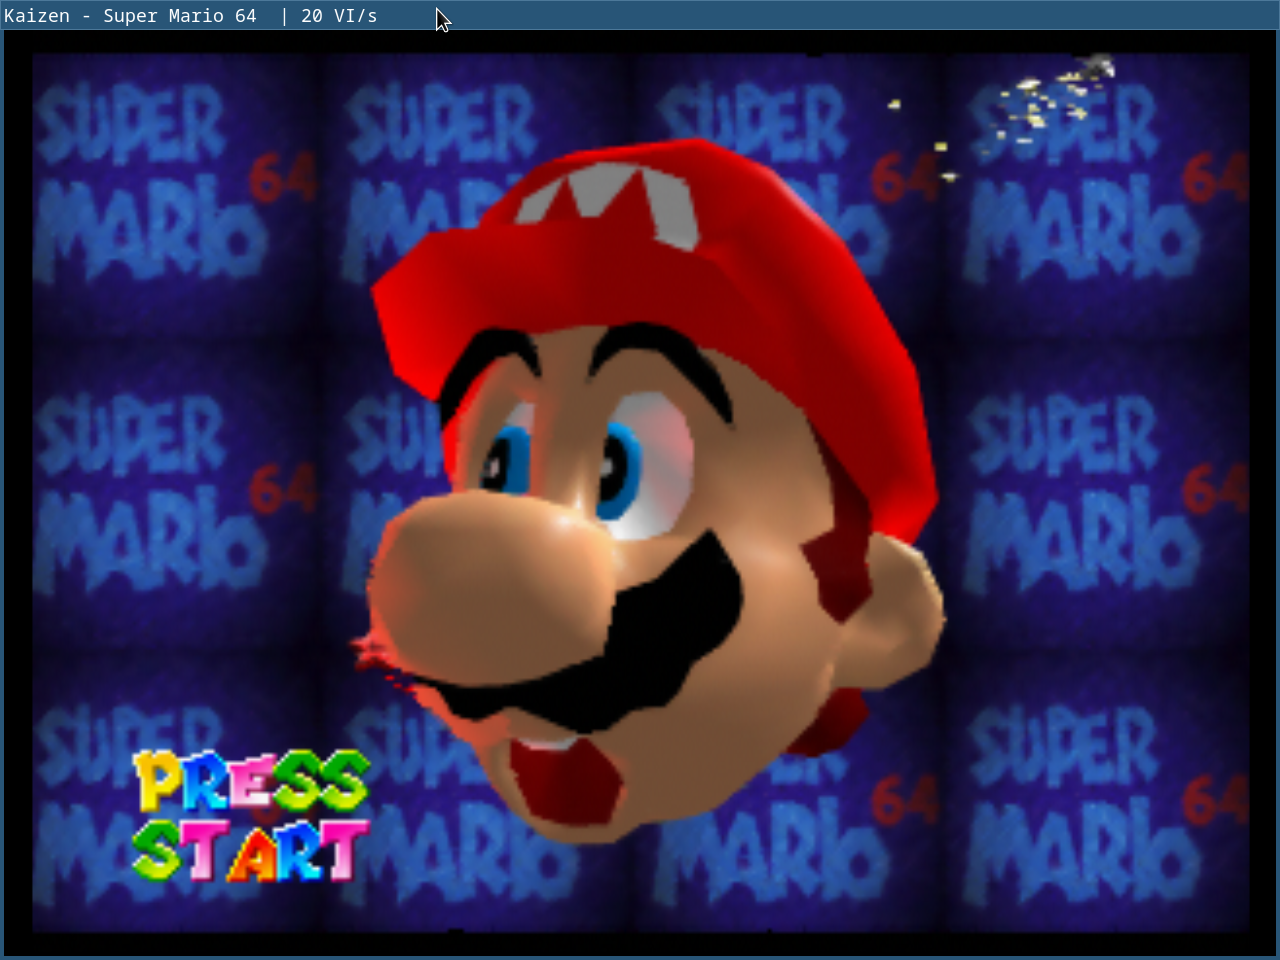 Mario's face